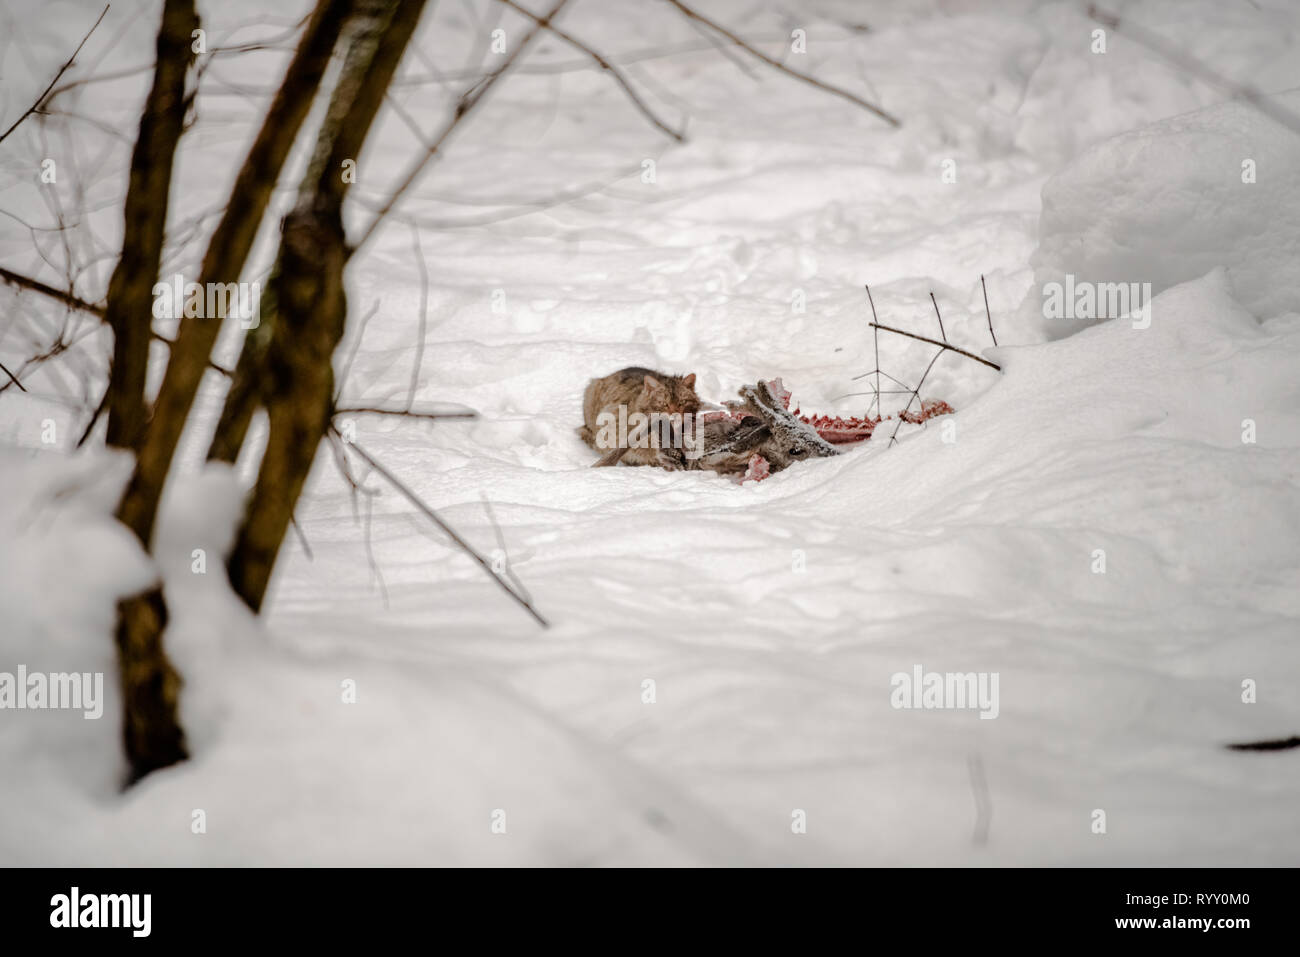 Die europäische Wildkatze (Felis silvestris) ist Essen ein Reh Karkasse durch Wölfe getötet. Europäische scavenging Arten. Tiere der Polnischen Karpaten Stockfoto